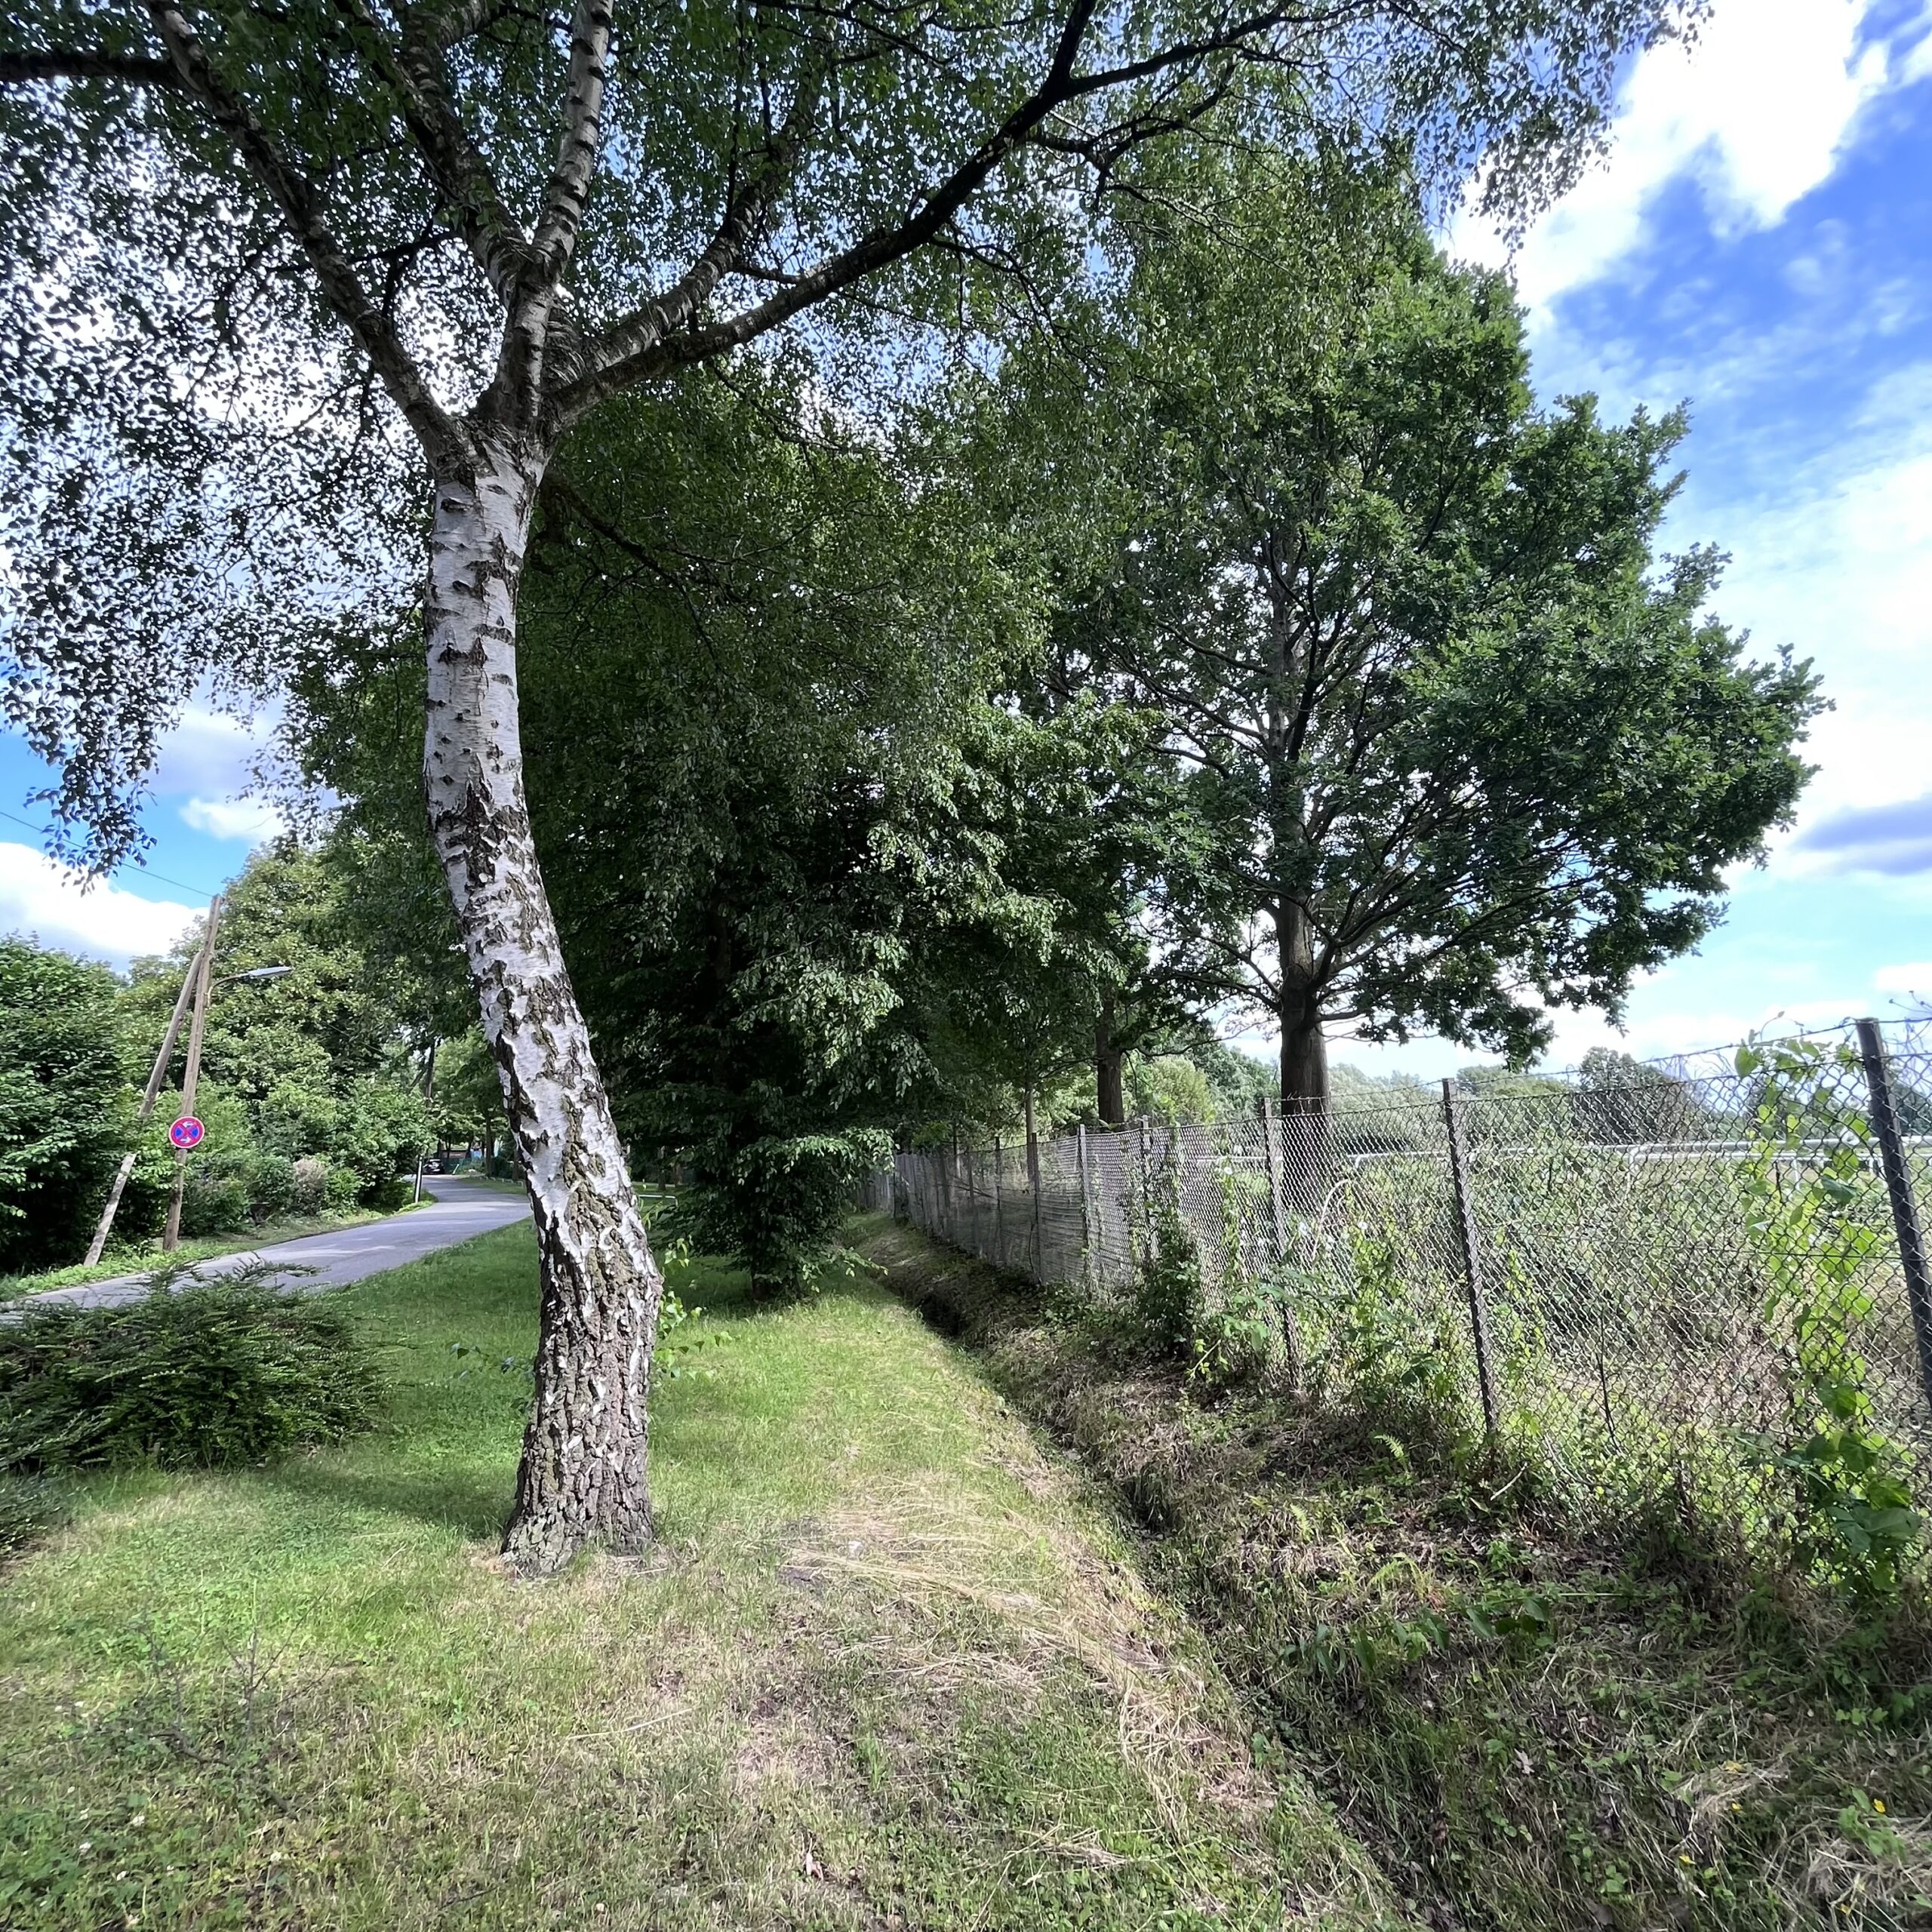 Birke steht neben einem Graben, dahinter ist ein Zaun zur Horner Rennbahn. Im Hintergrund ein großer Baum, blauer Himmel mit Wolken